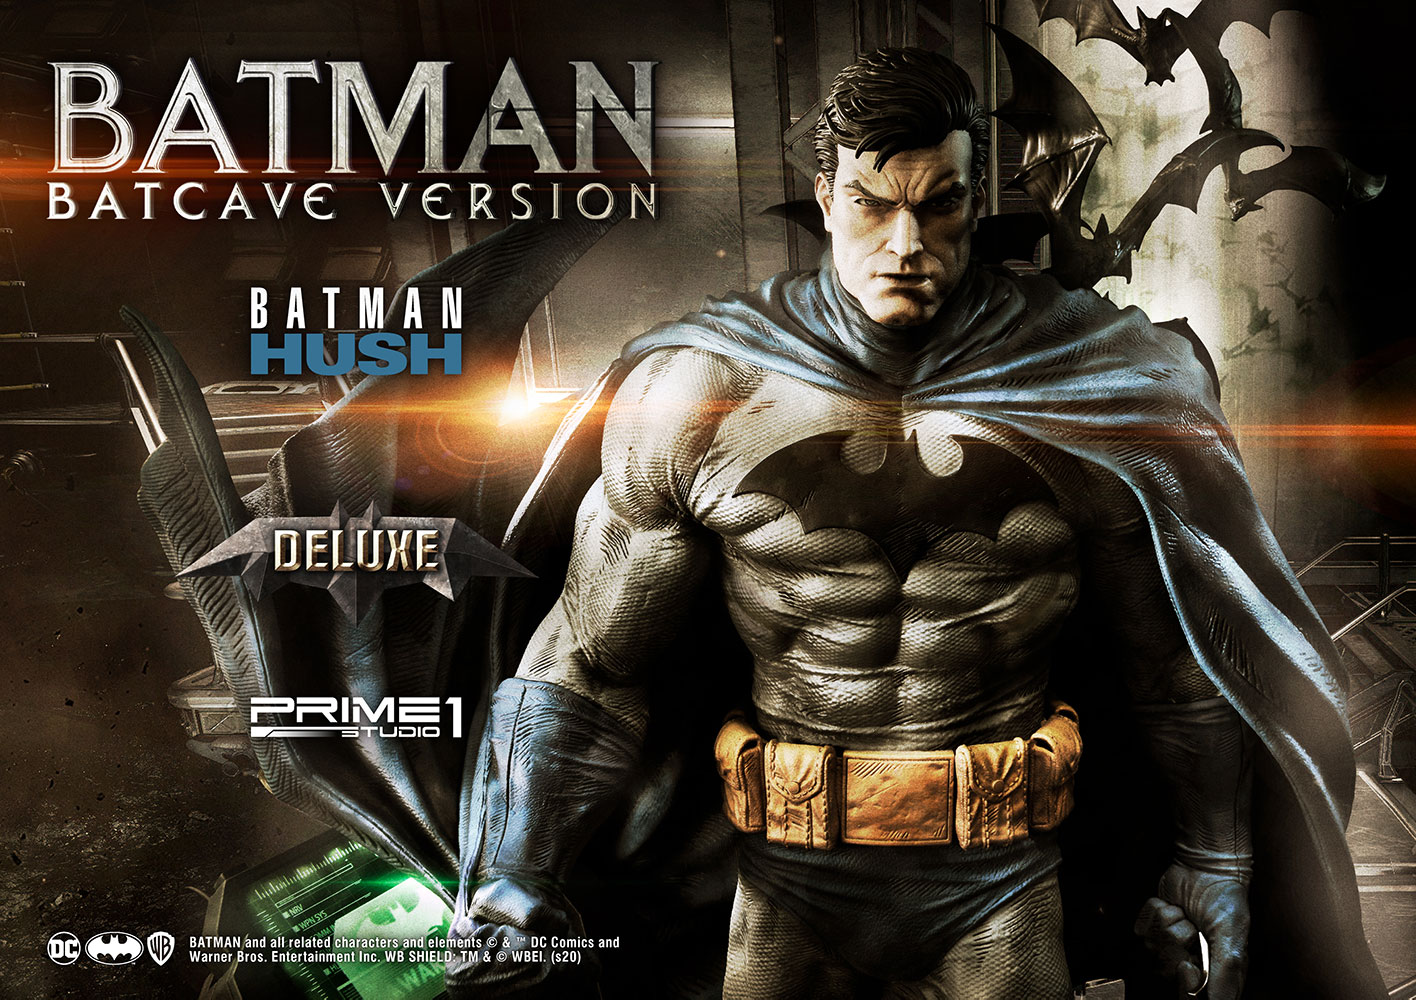 Batman Batcave Deluxe Version (Prototype Shown) View 1